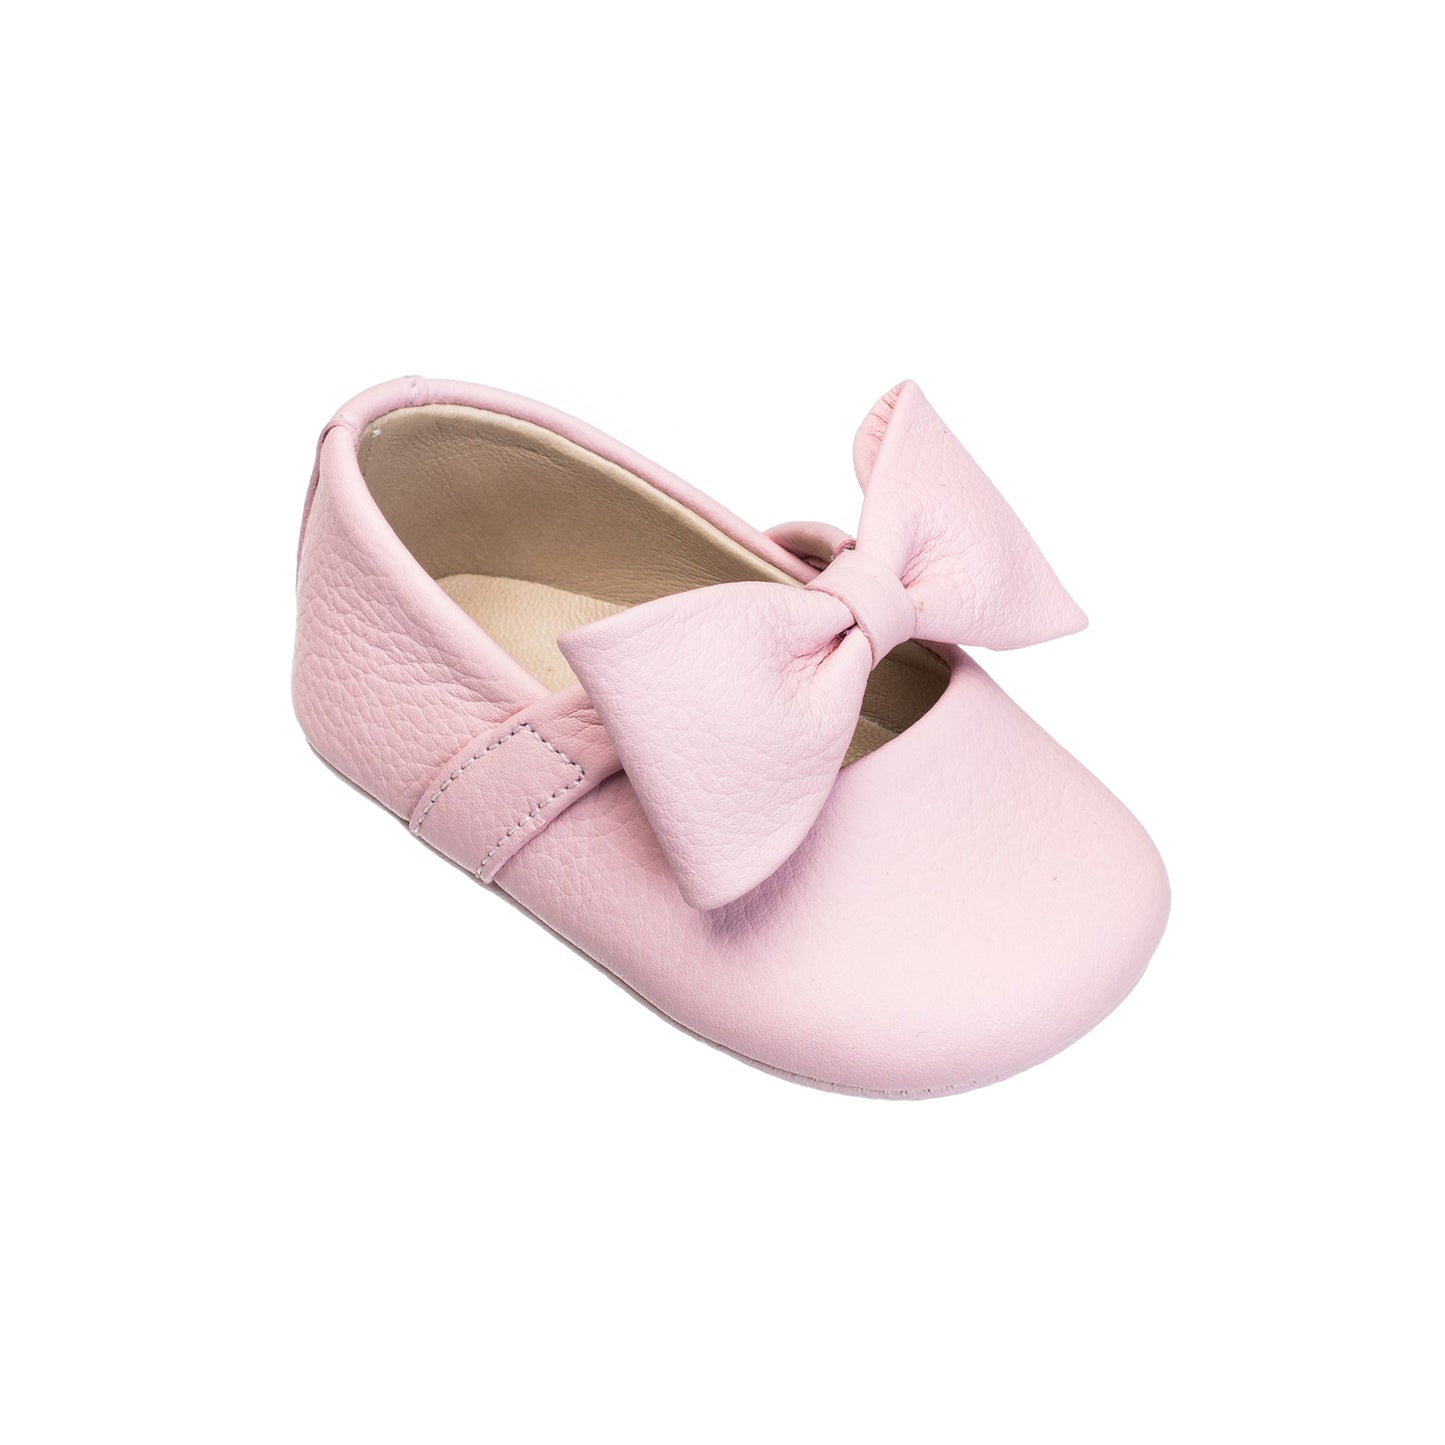 Elephantito - Baby Ballerina w/Bow Pink